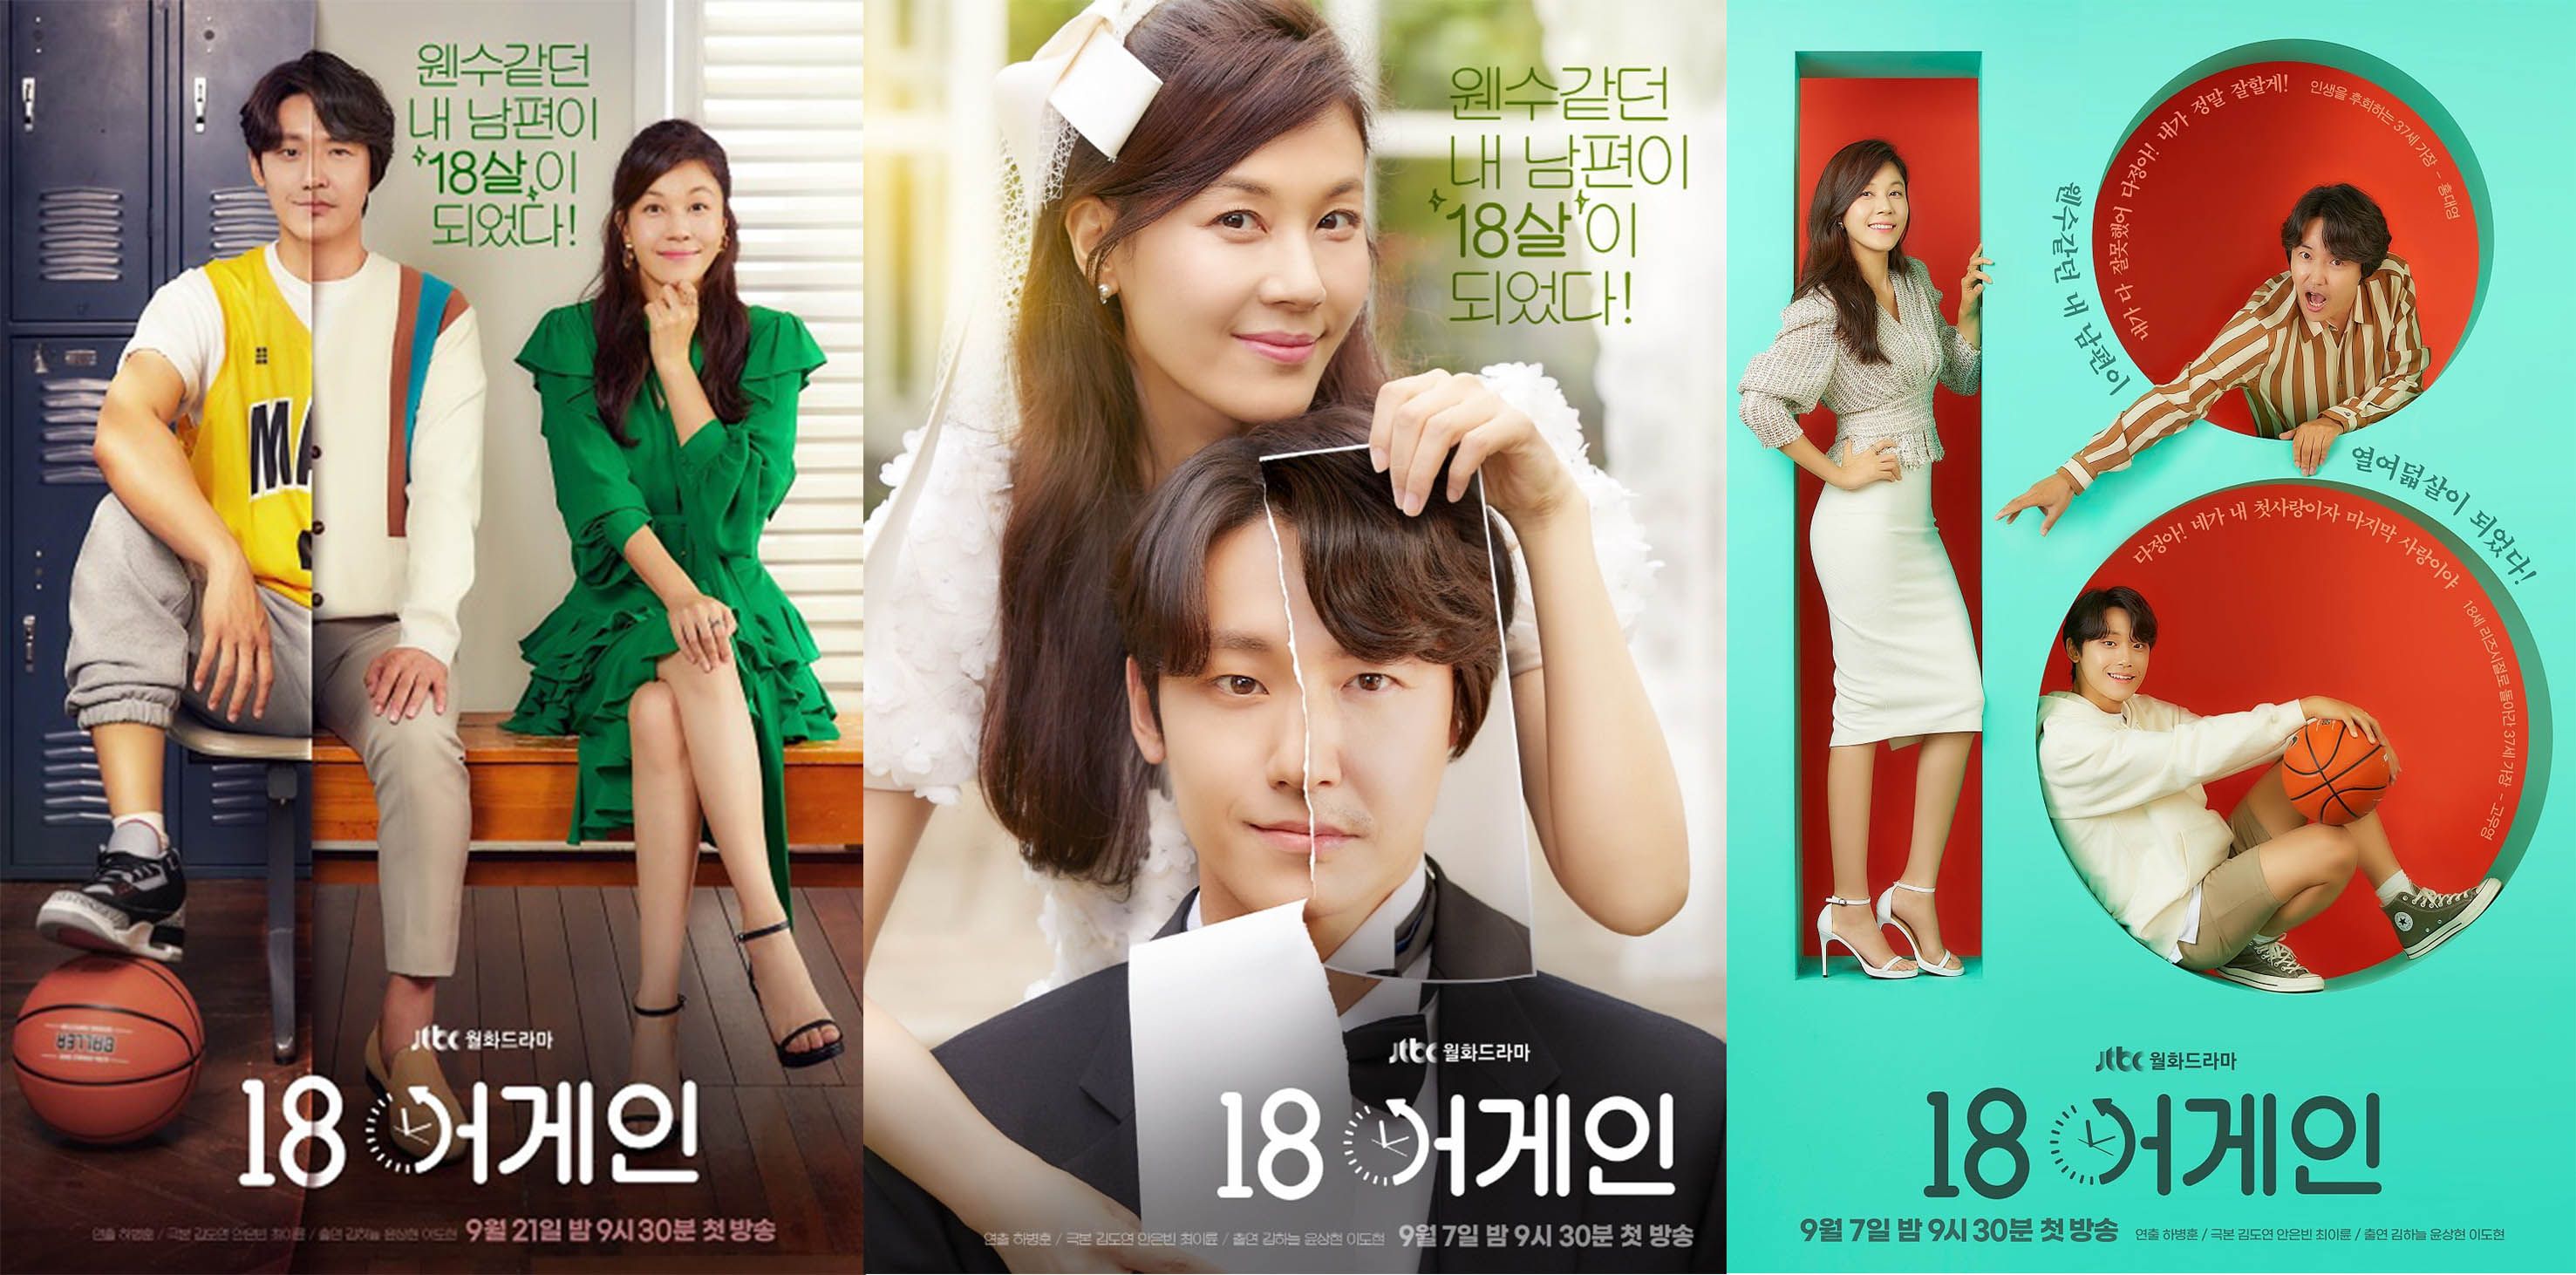 Nonton Switch 2018 Drama Korea Streaming Online Subtitle Indonesia Filmepik Korean Drama Drama Korea Drama